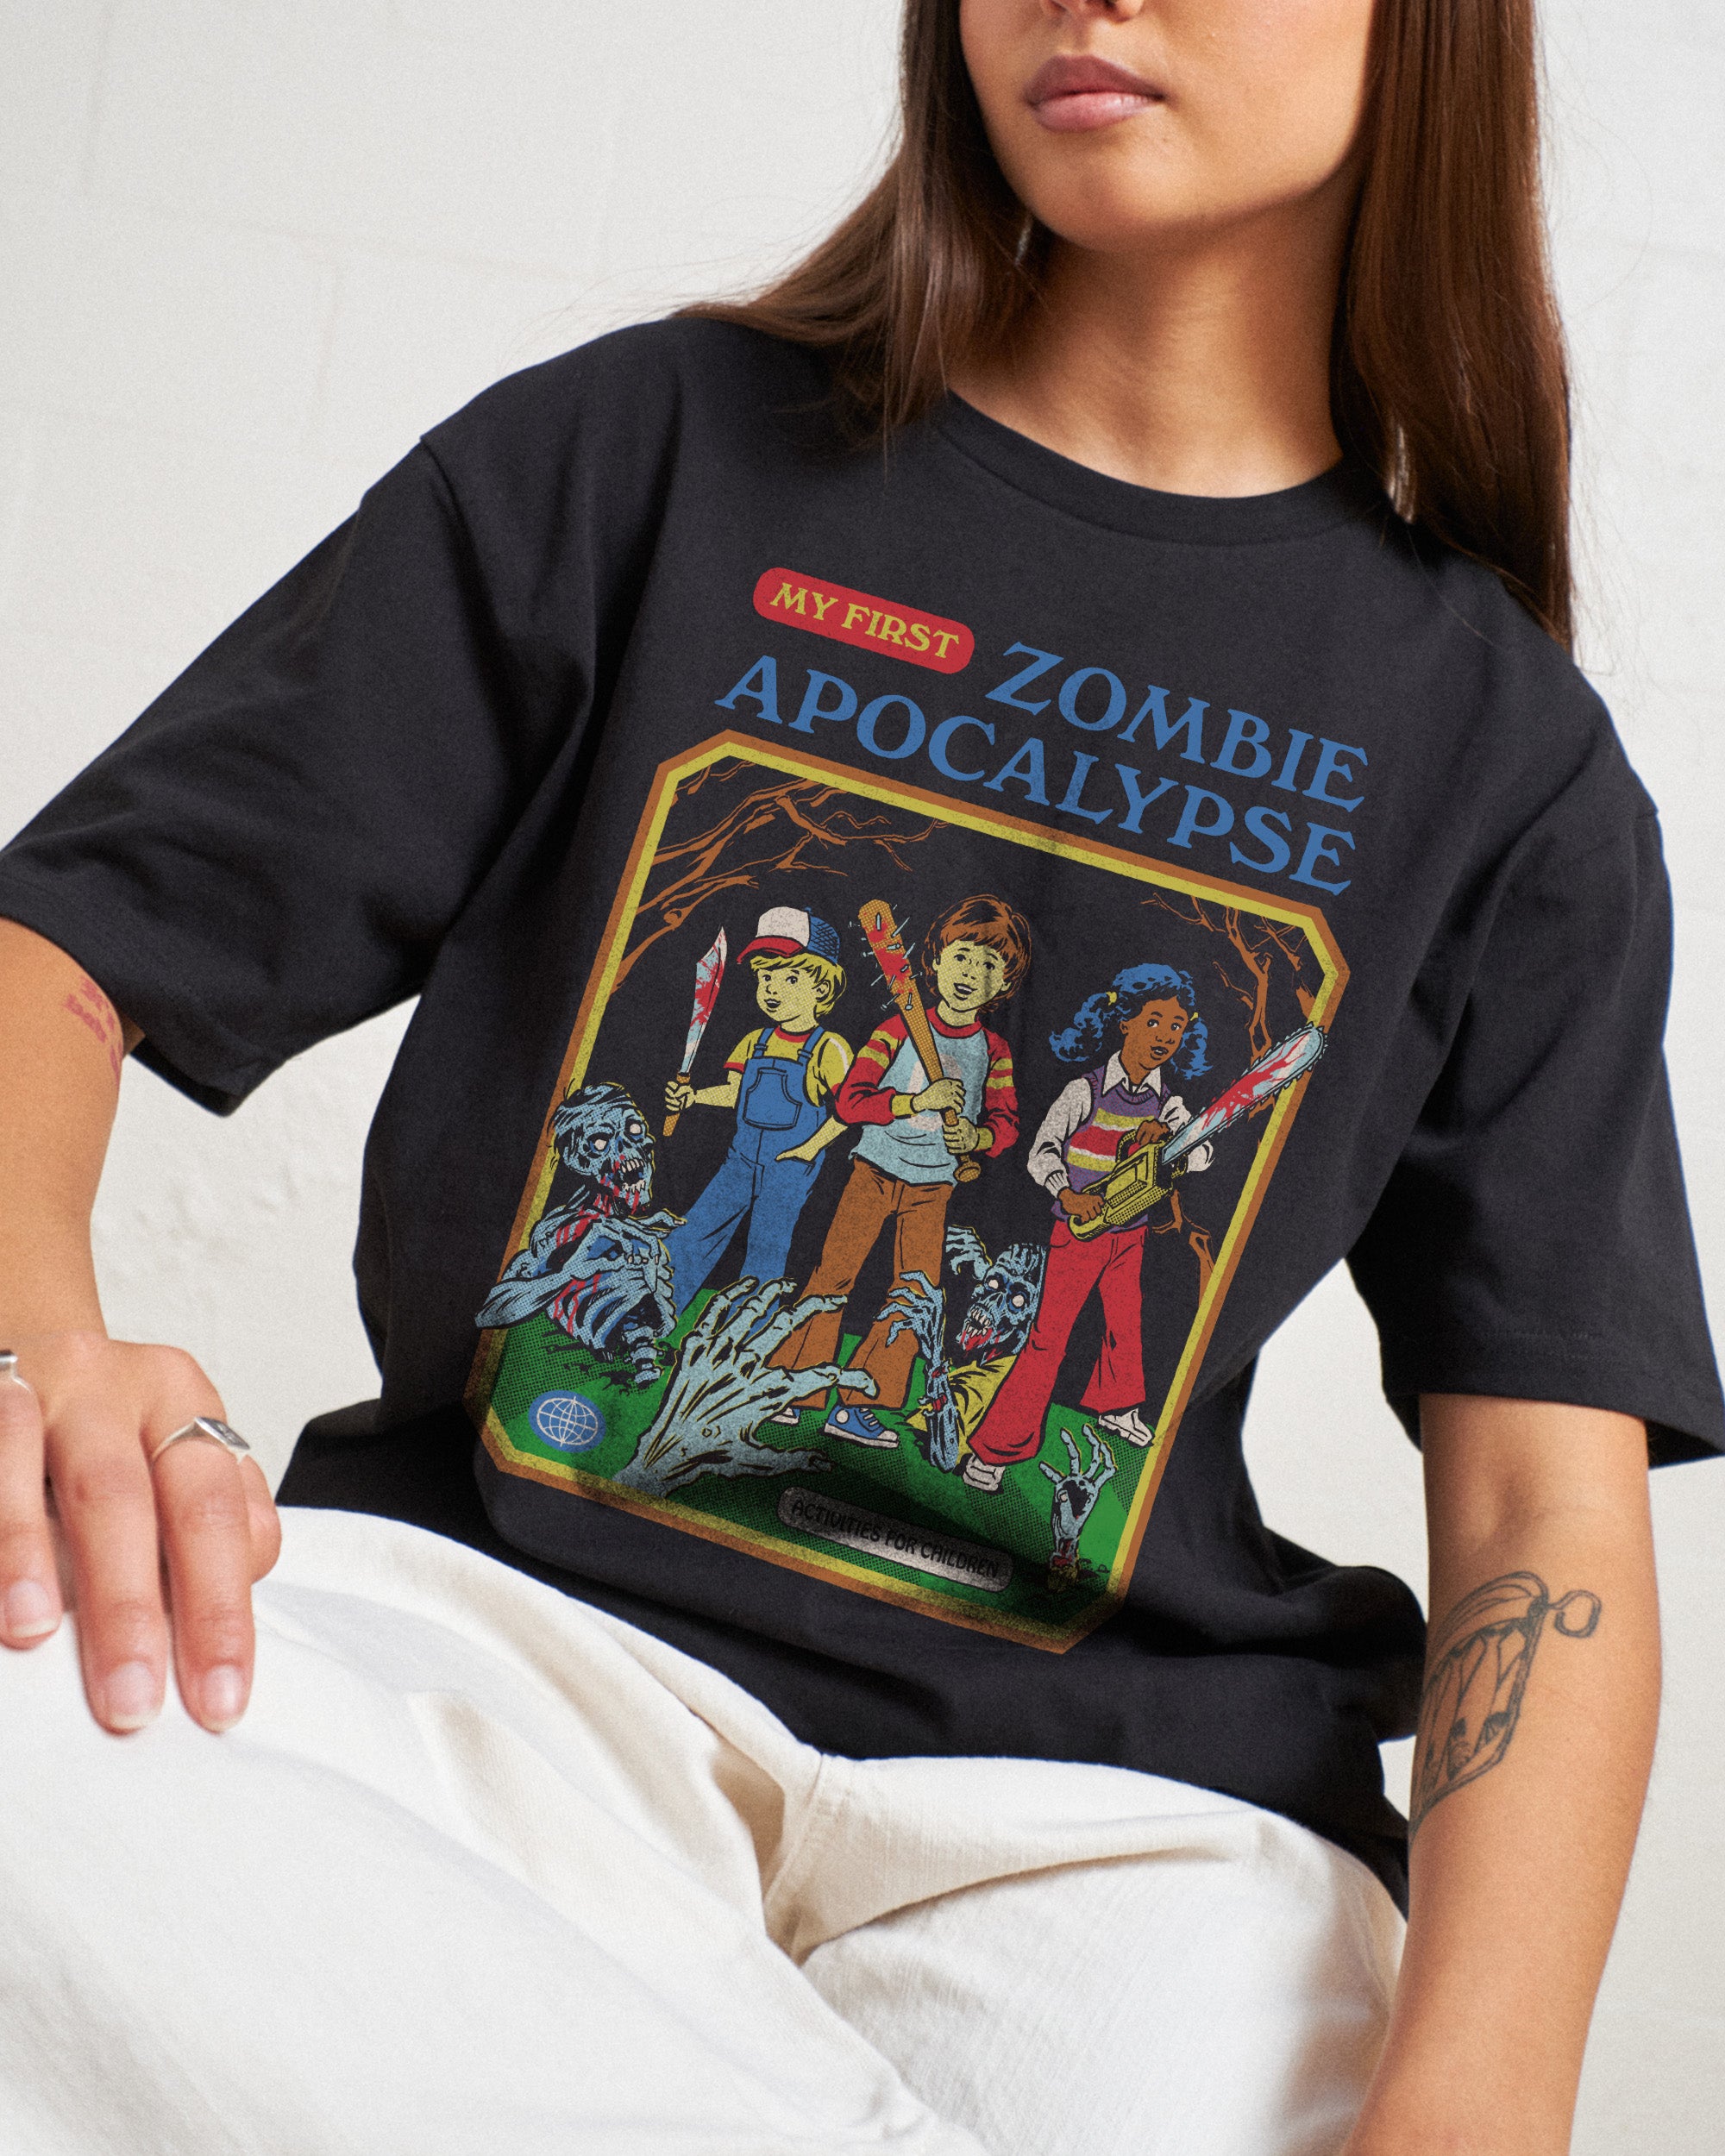 My First Zombie Apocalypse T-Shirt